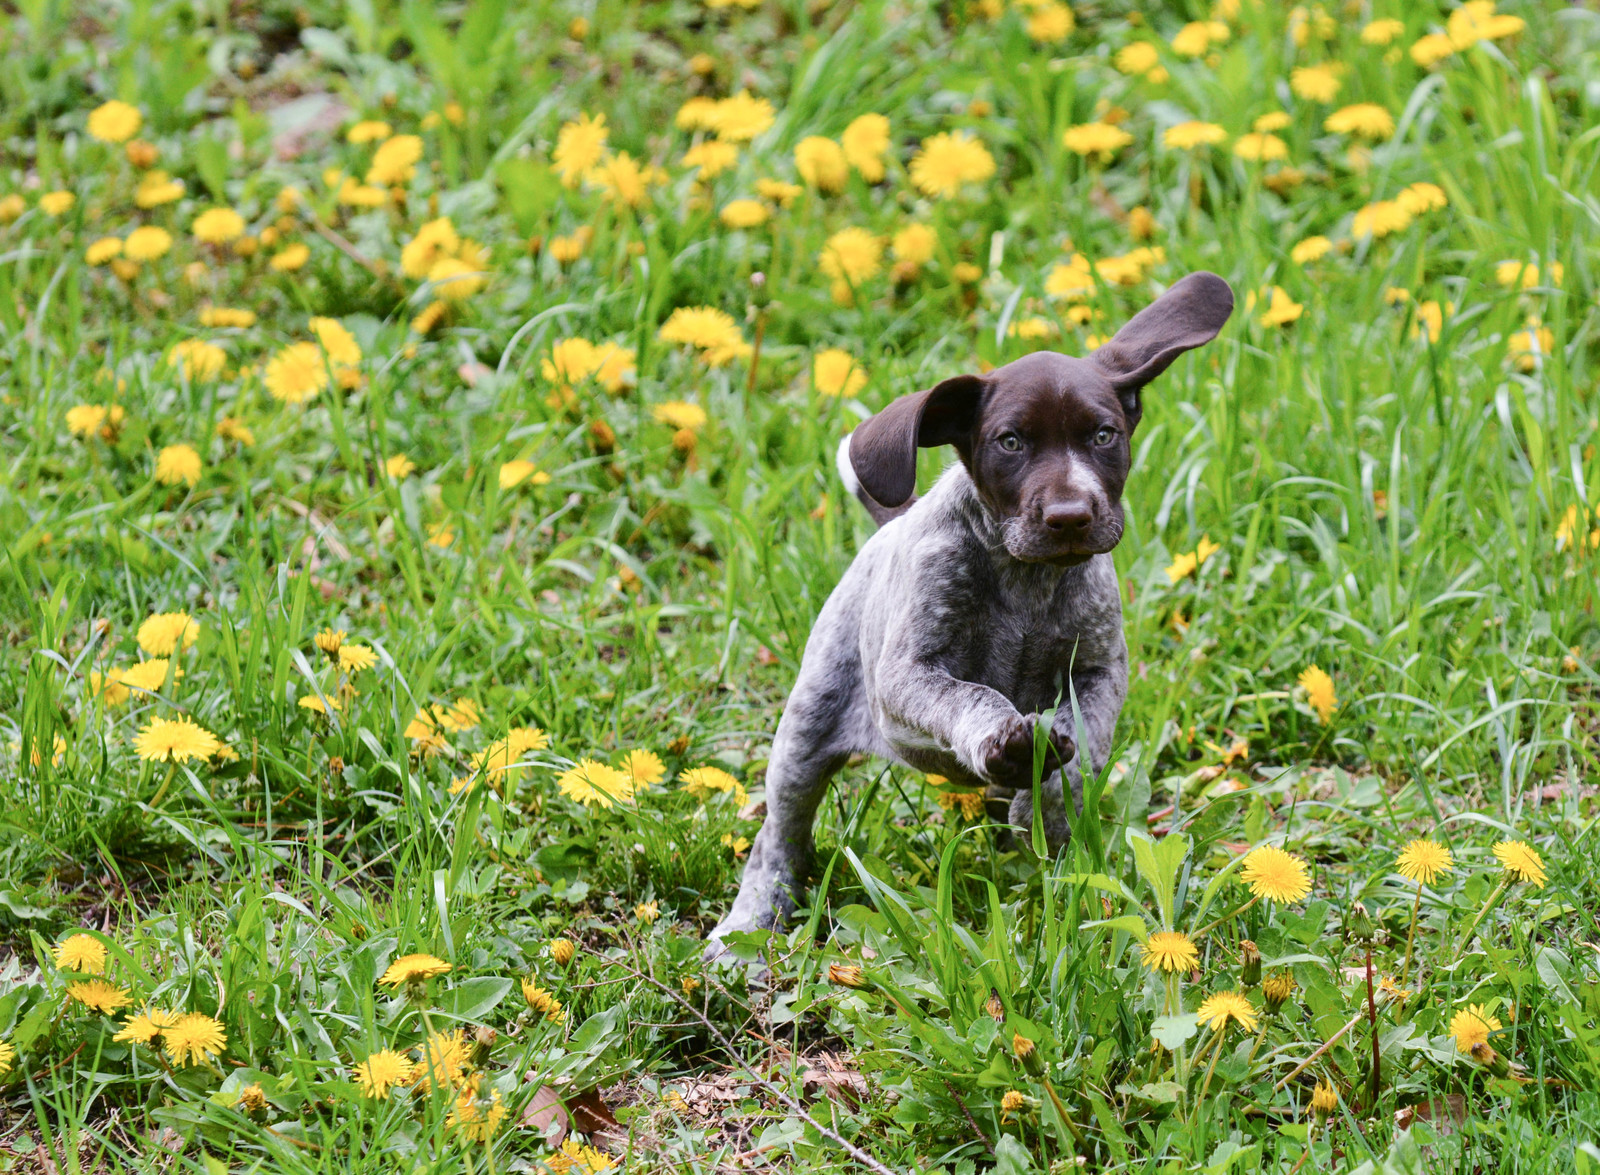 Brunspraglet, korthåret valp med flagrende ører løper i gresset omgitt av løvetann